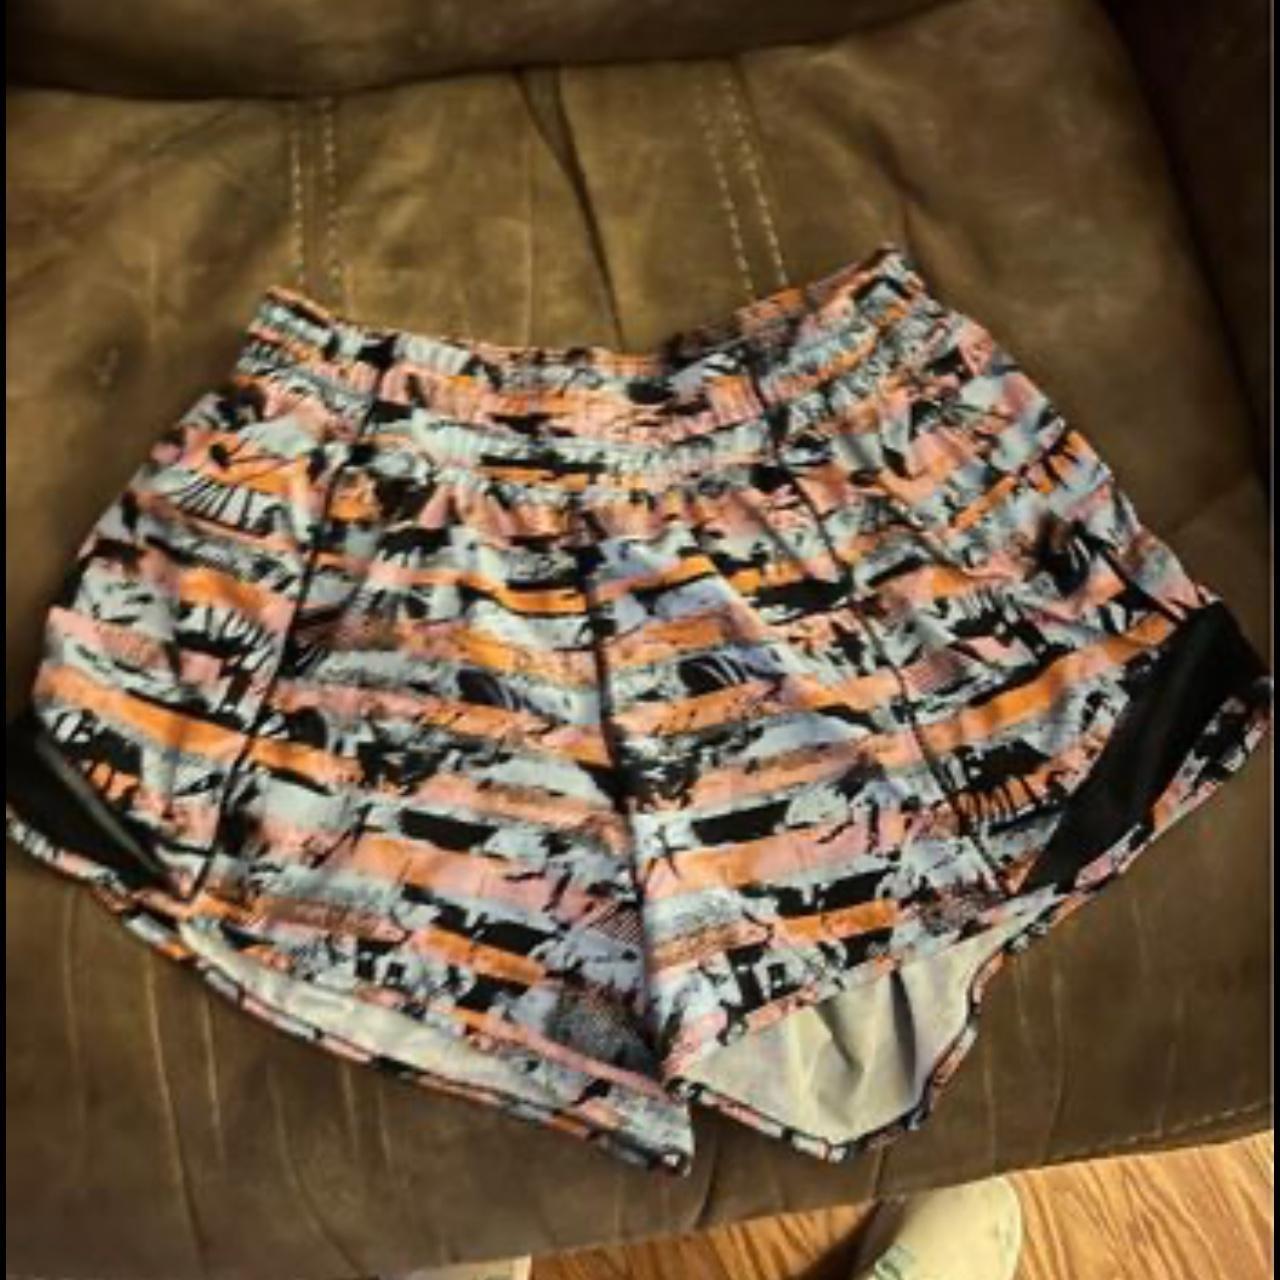 Buy the Women's Lululemon Shorts Size 8